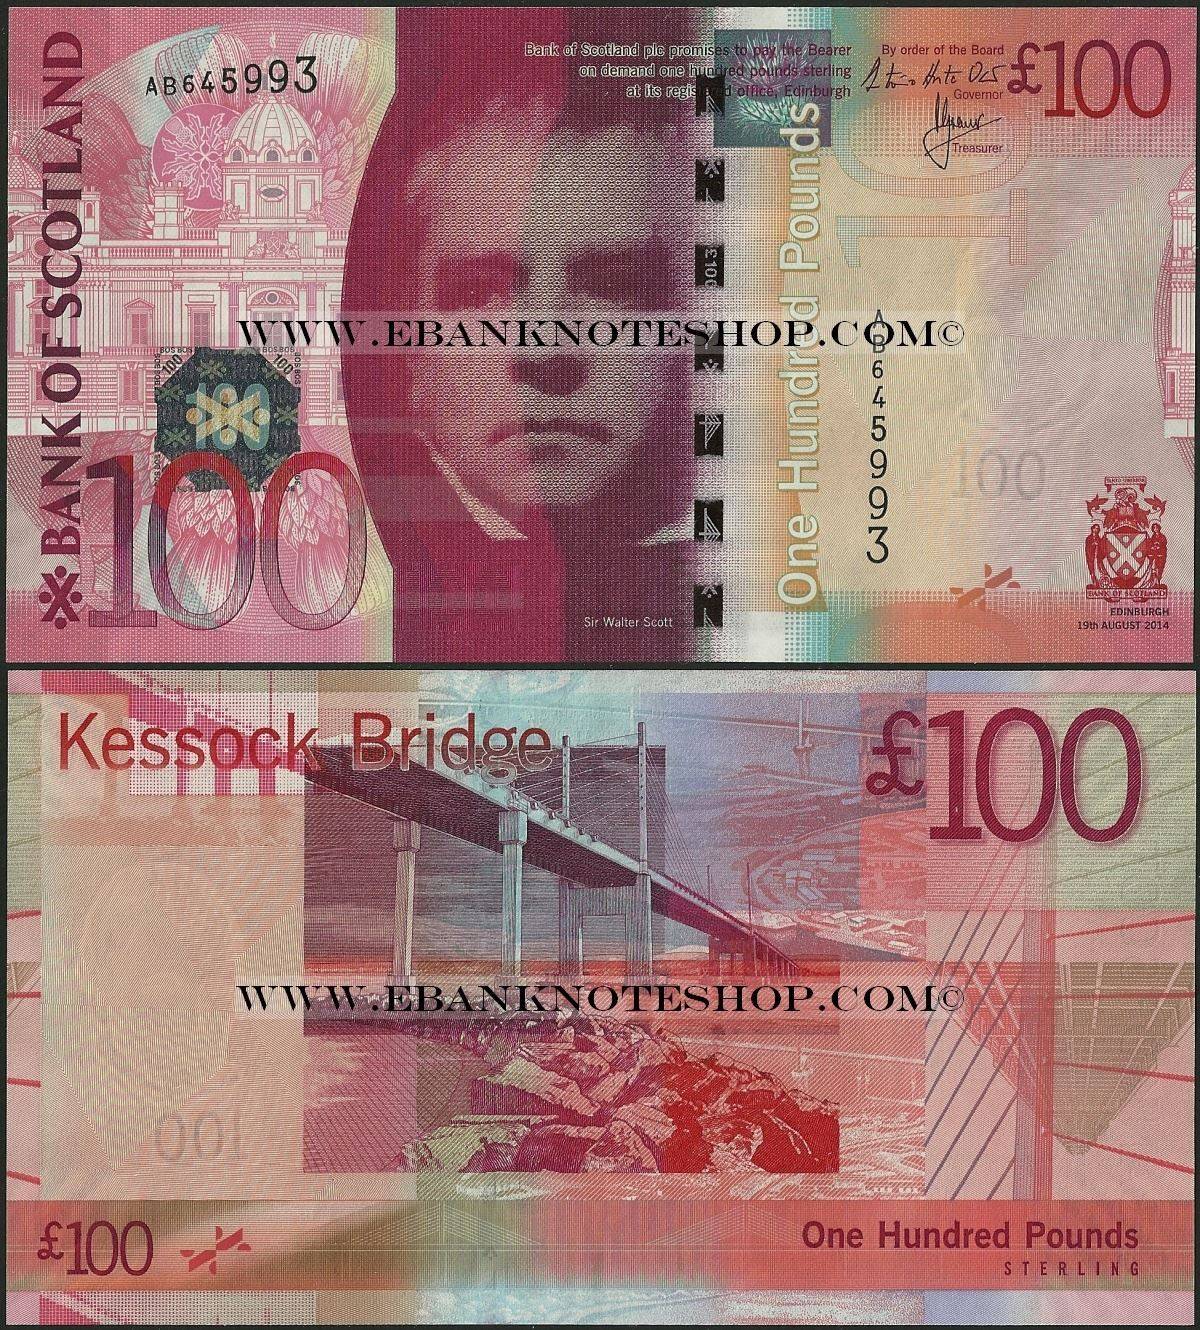 Банкнота 100 долларов